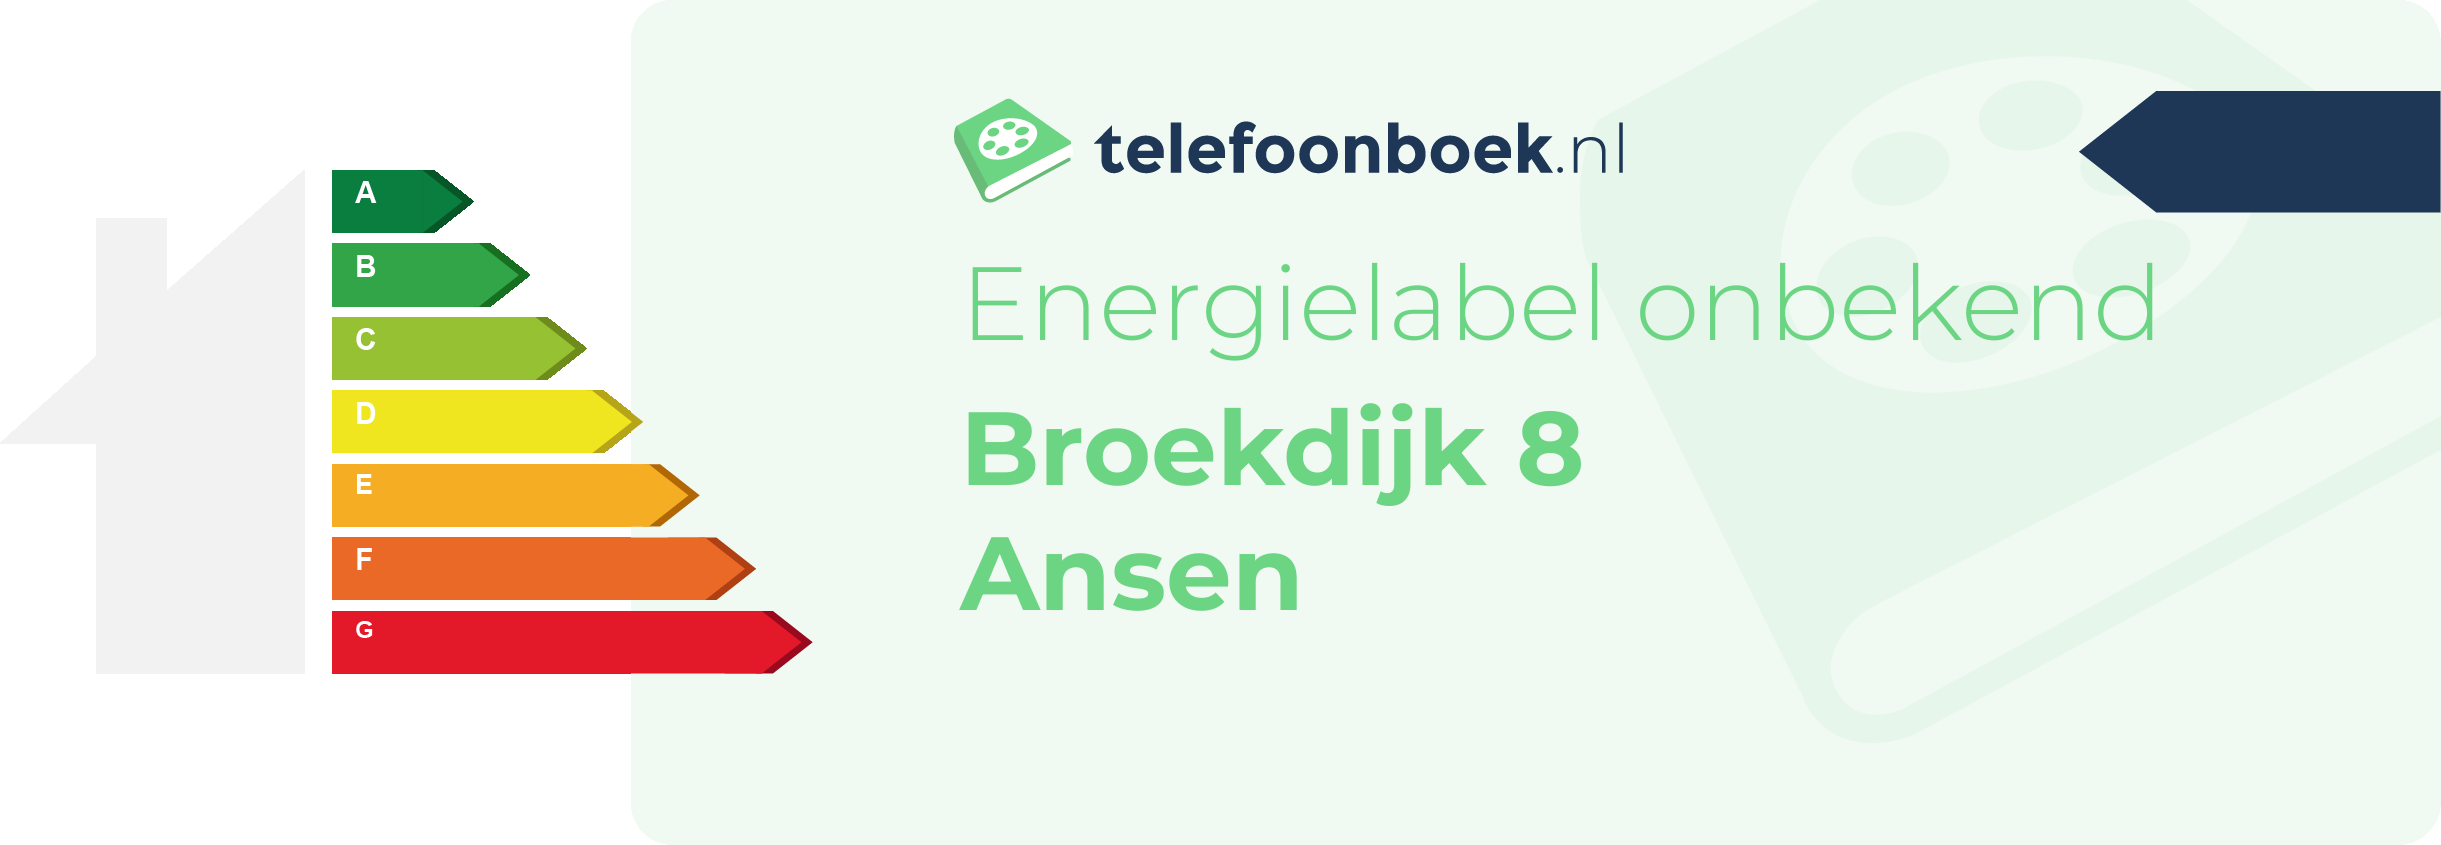 Energielabel Broekdijk 8 Ansen